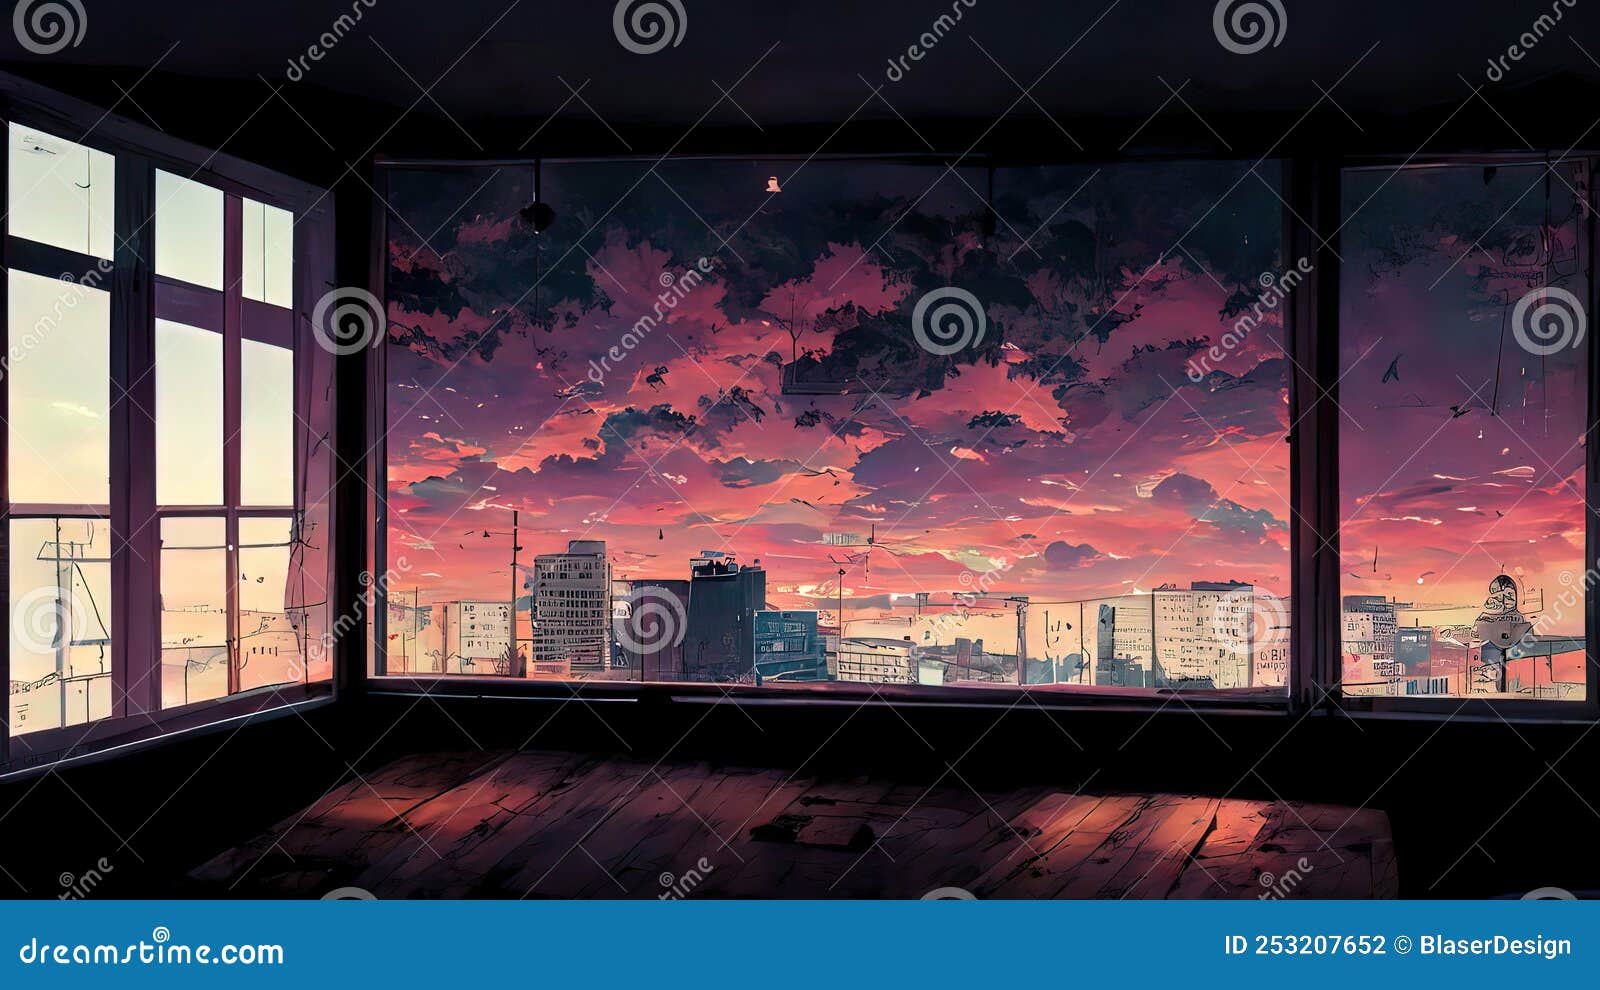 45 Anime Lofi Desktop Wallpapers  WallpaperSafari